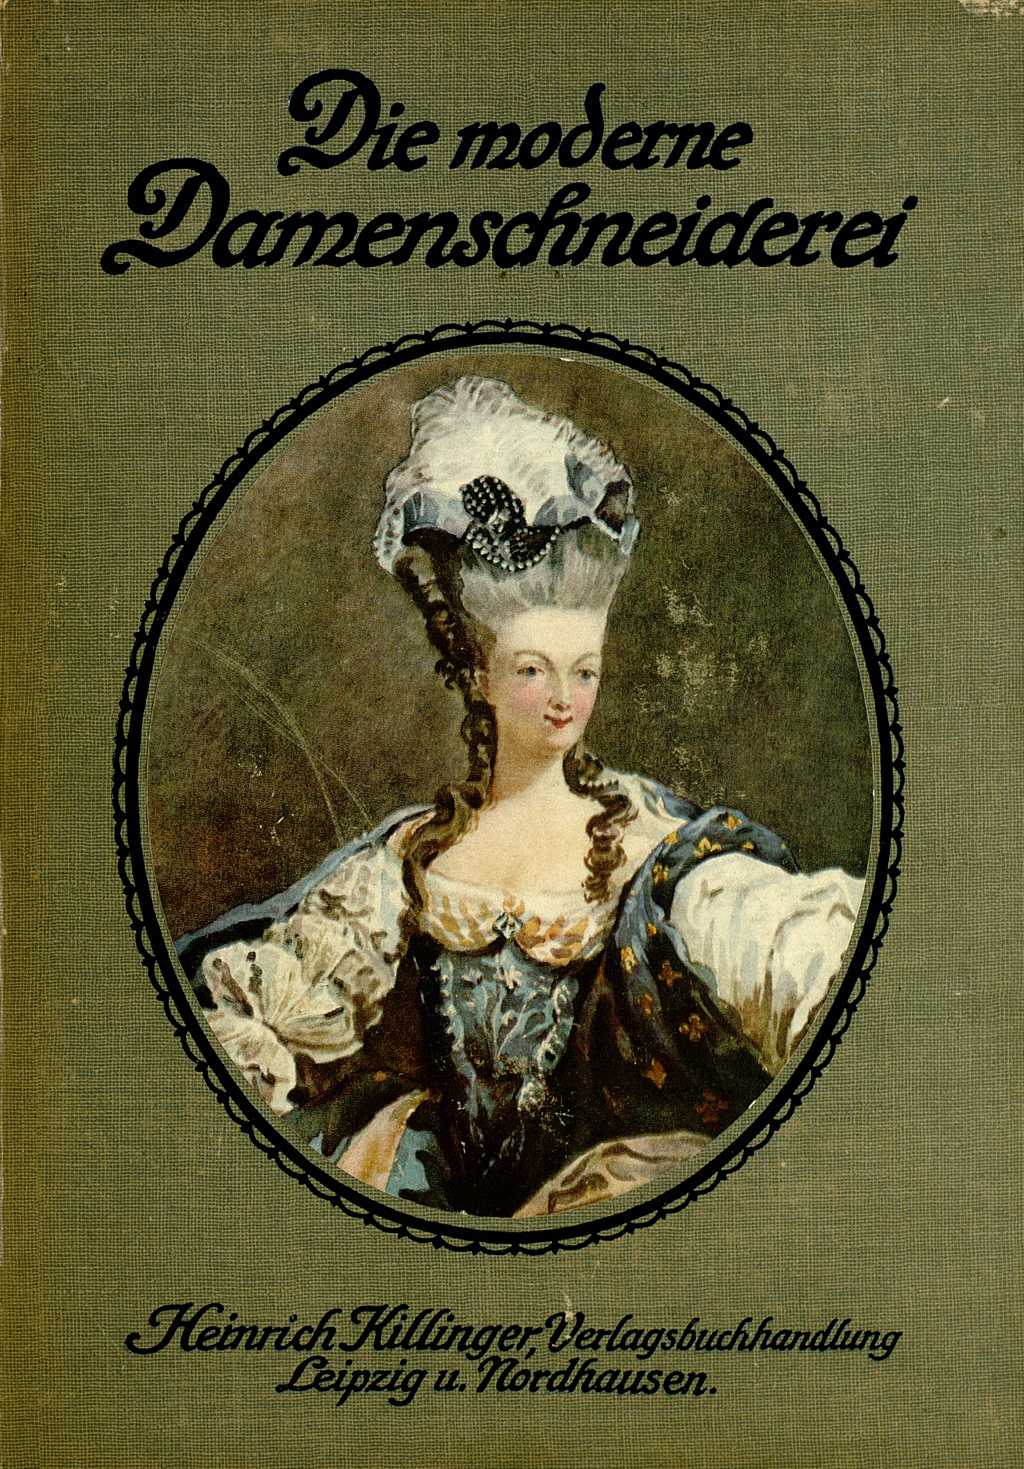 Buchcover von "Die moderne Damenschneiderei in Wort und Bild", Grüner Buchdeckel mit Passepartout einer Frau gekleidet im Rokokostil